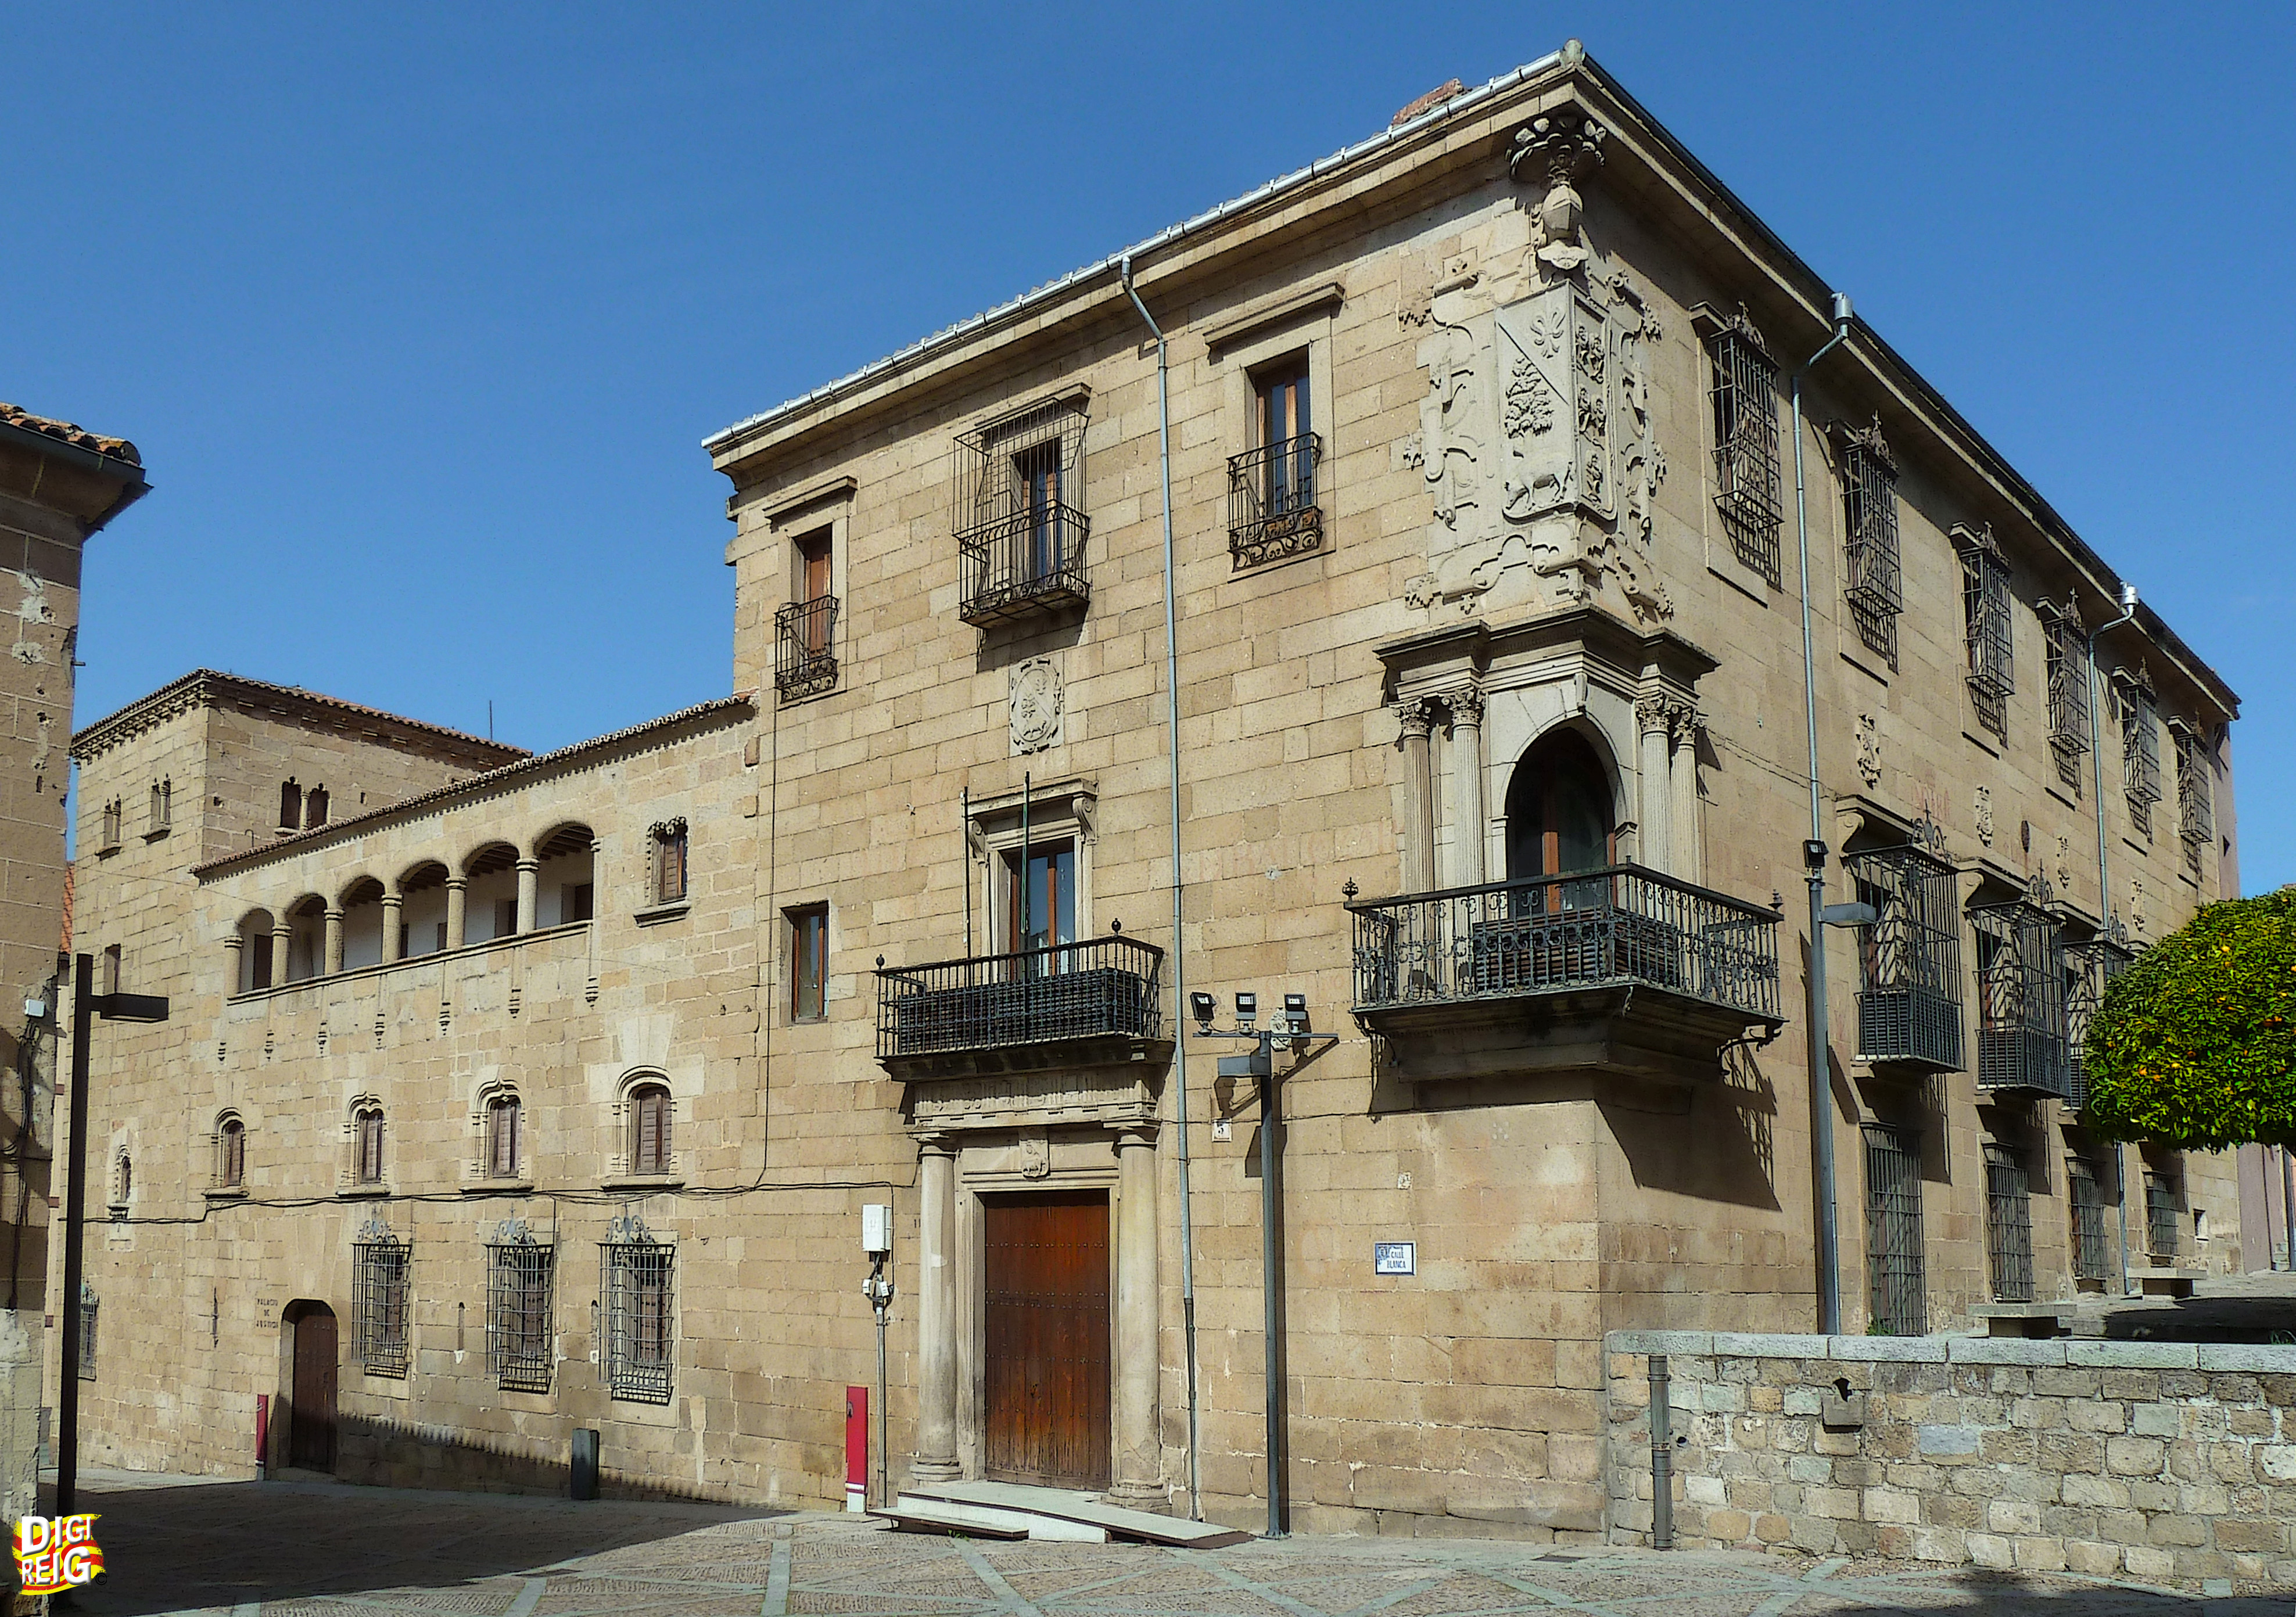 Foto: Casa del Deán - Plasencia (Cáceres), España